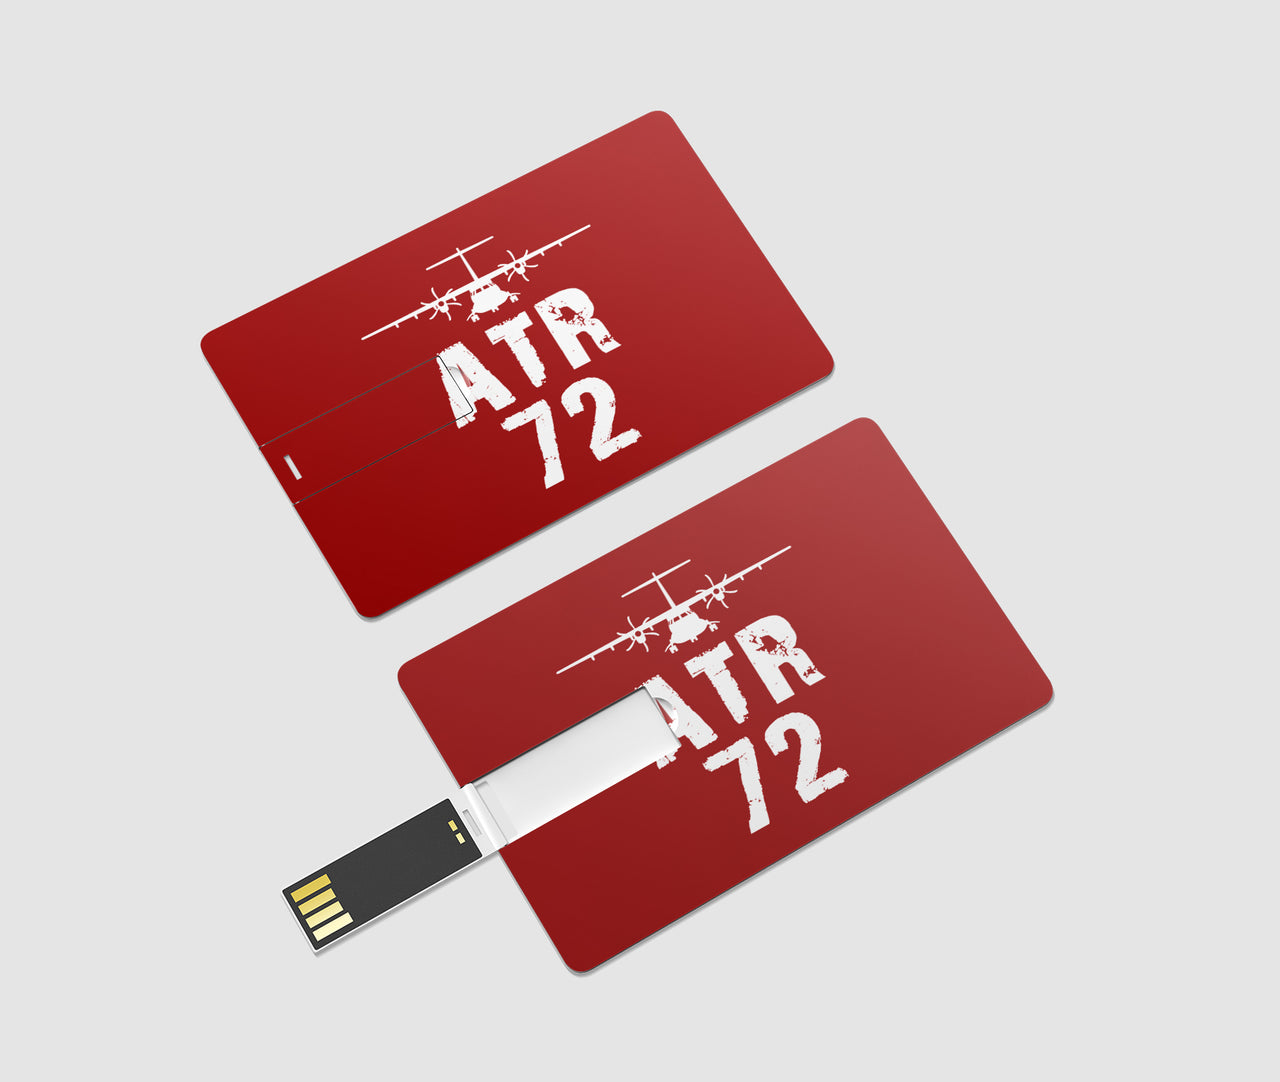 ATR-72 & Plane Designed USB Cards